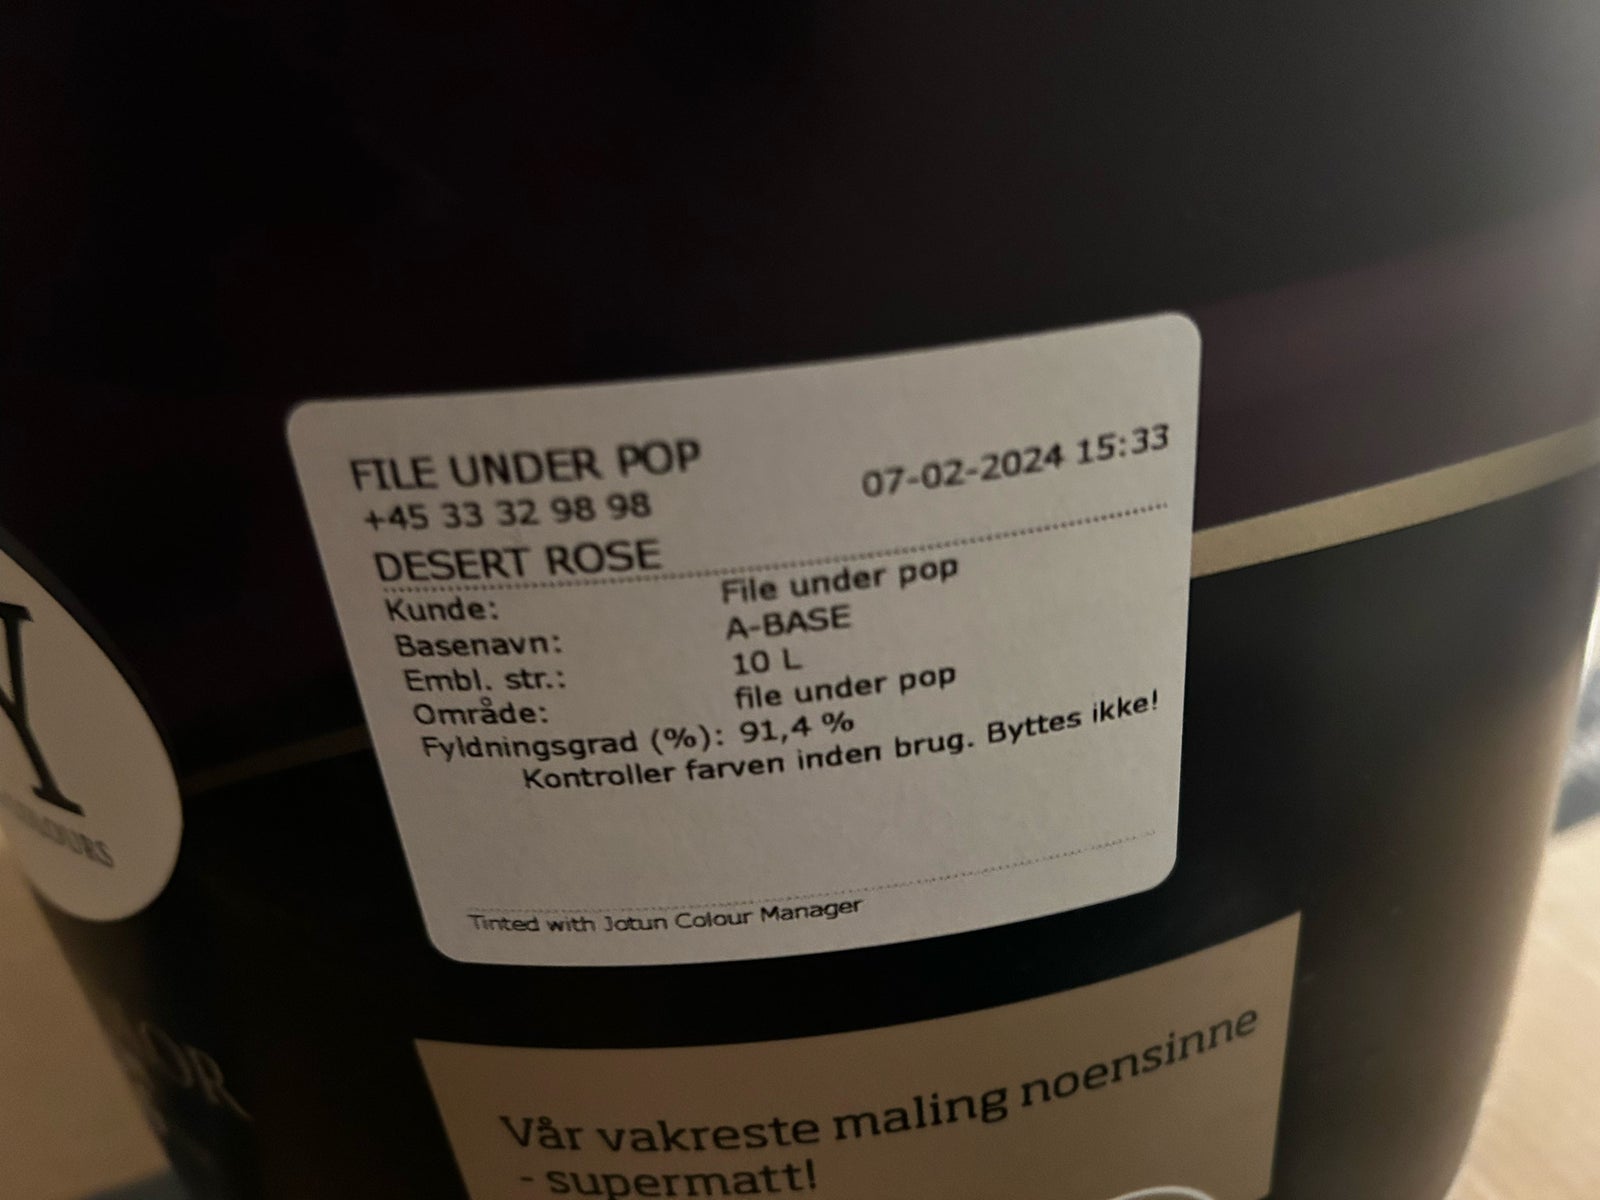 Maling, File under pop, 10 L liter